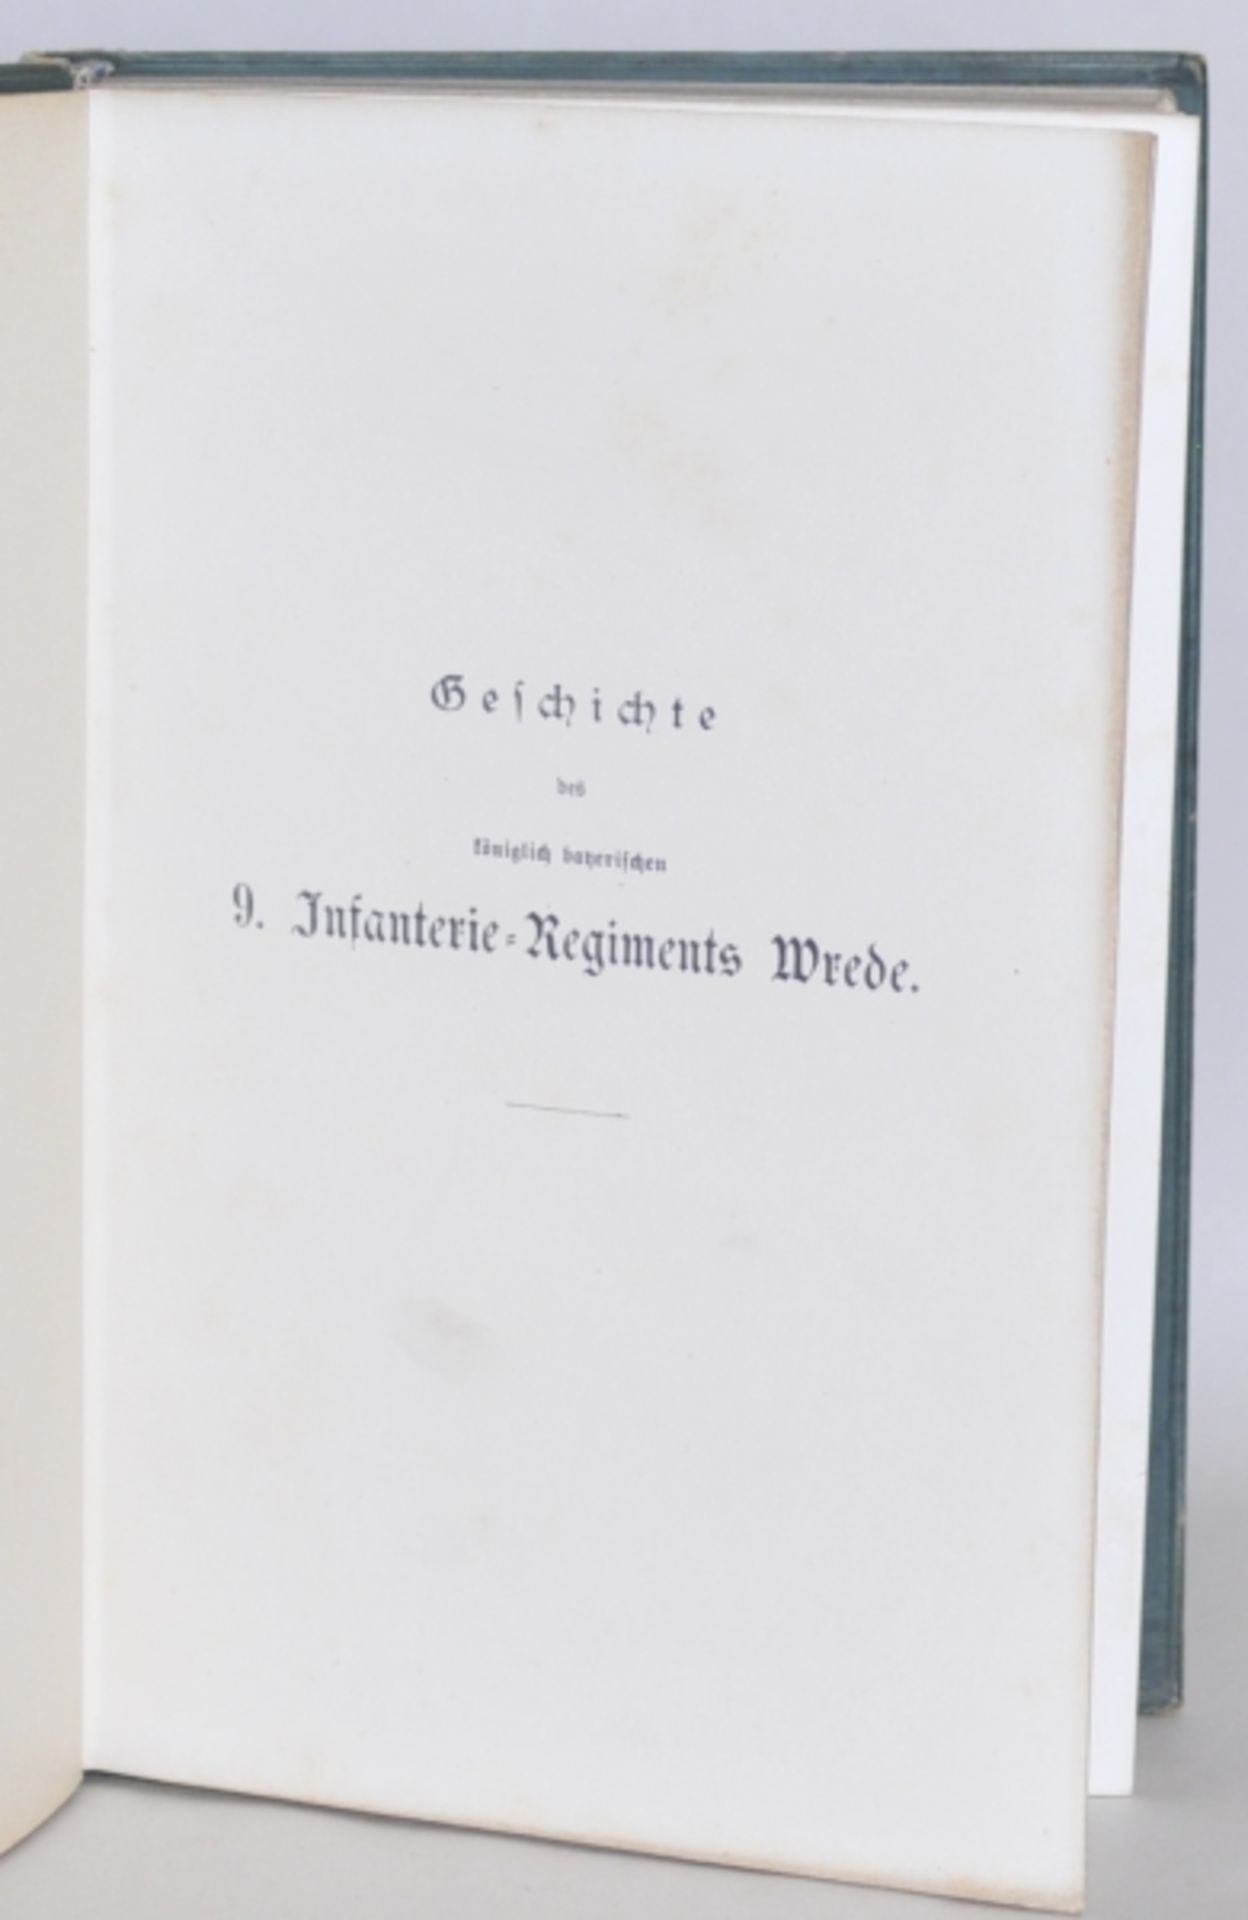 Geschichte des königlich bayrischen 9. Infanterie-Regiments Wrede.Würzburg, Verlag von Ballhorn